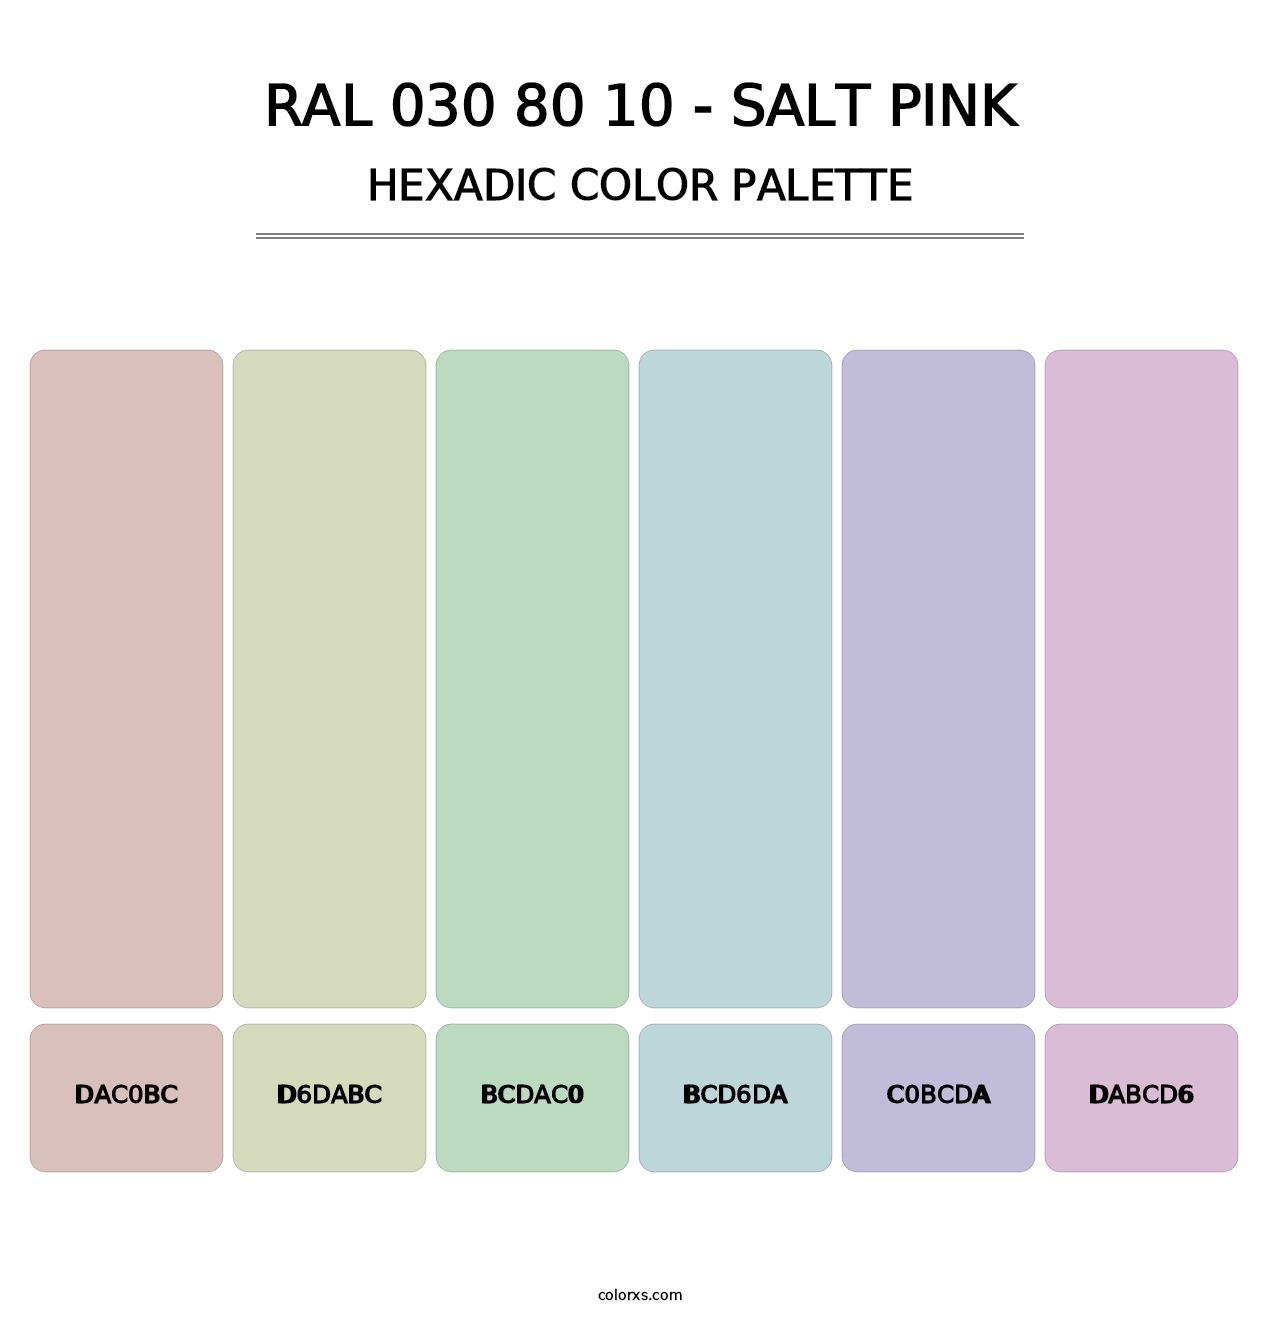 RAL 030 80 10 - Salt Pink - Hexadic Color Palette